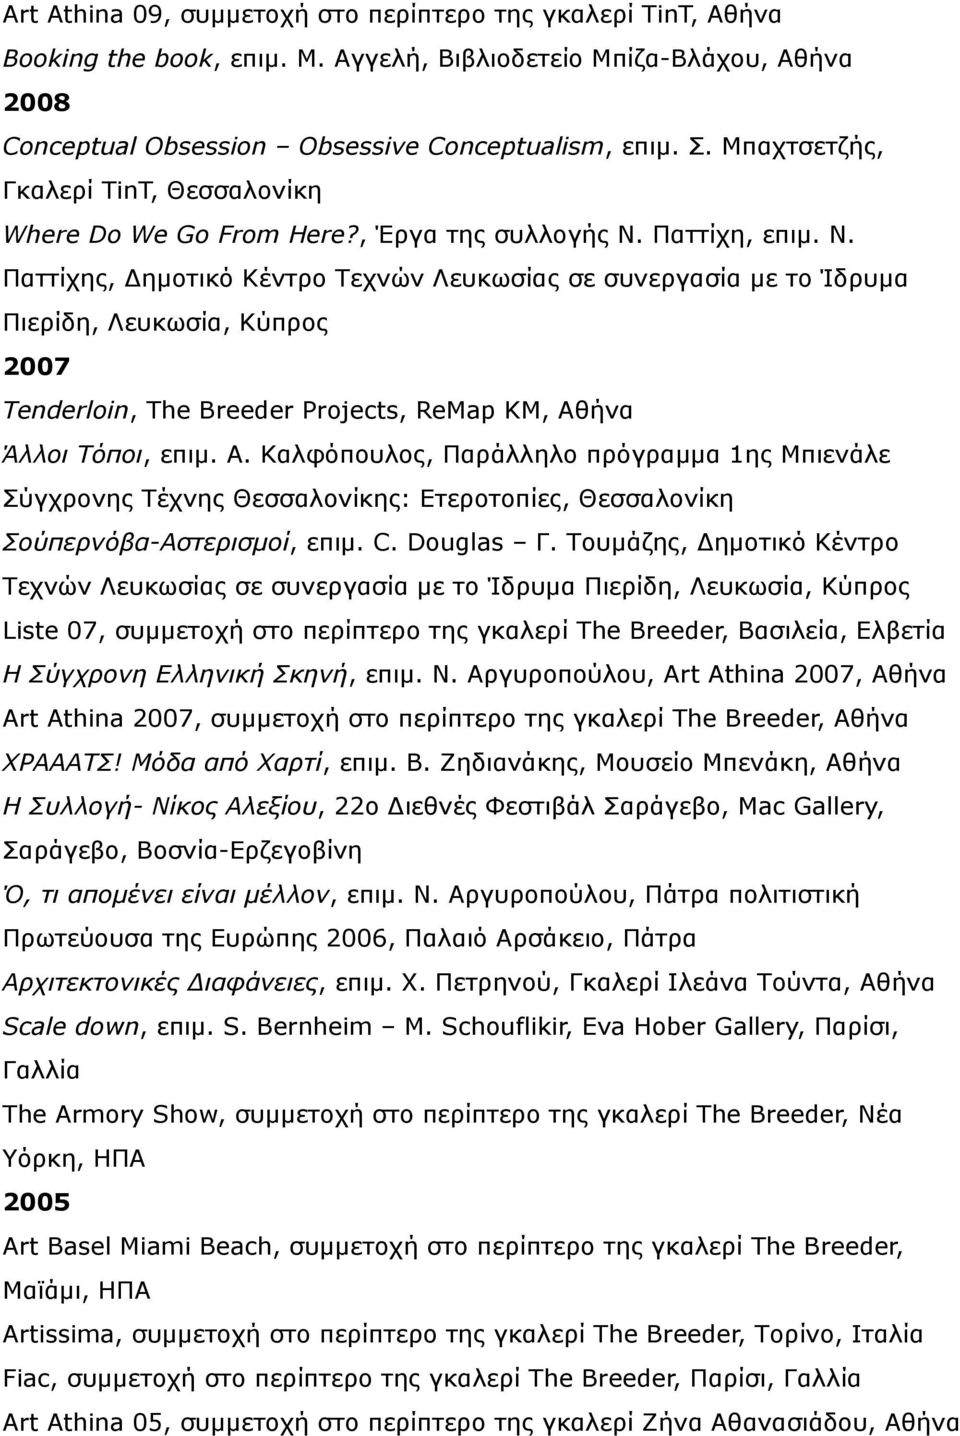 Παττίχη, επιµ. Ν. Παττίχης, Δηµοτικό Κέντρο Τεχνών Λευκωσίας σε συνεργασία µε το Ίδρυµα Πιερίδη, Λευκωσία, Κύπρος 2007 Tenderloin, The Breeder Projects, ReMap KM, Αθ